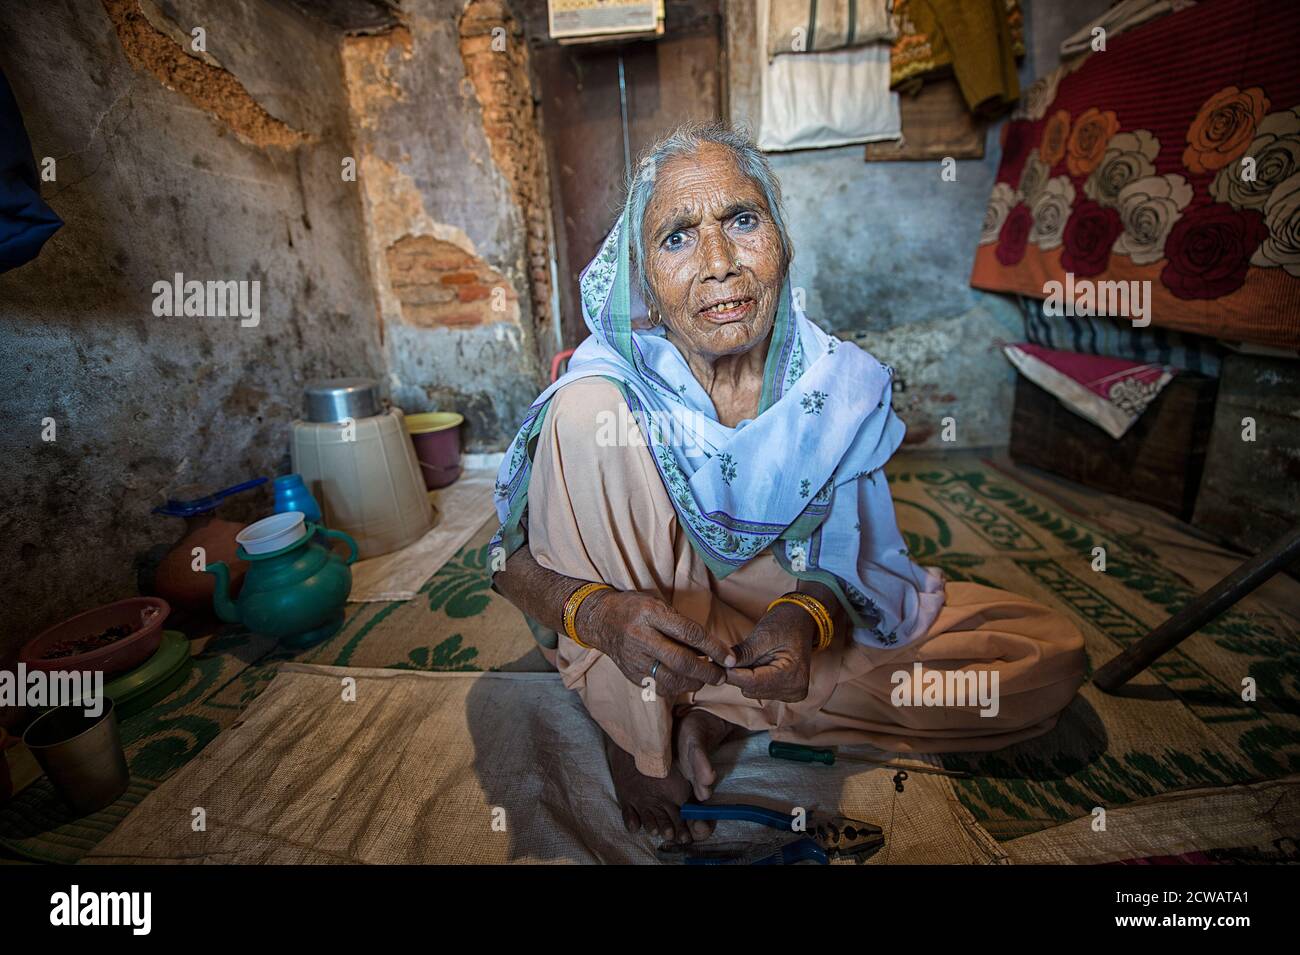 La vie quotidienne des visages indiens locaux non identifiés dans la rue de l'Inde. Banque D'Images